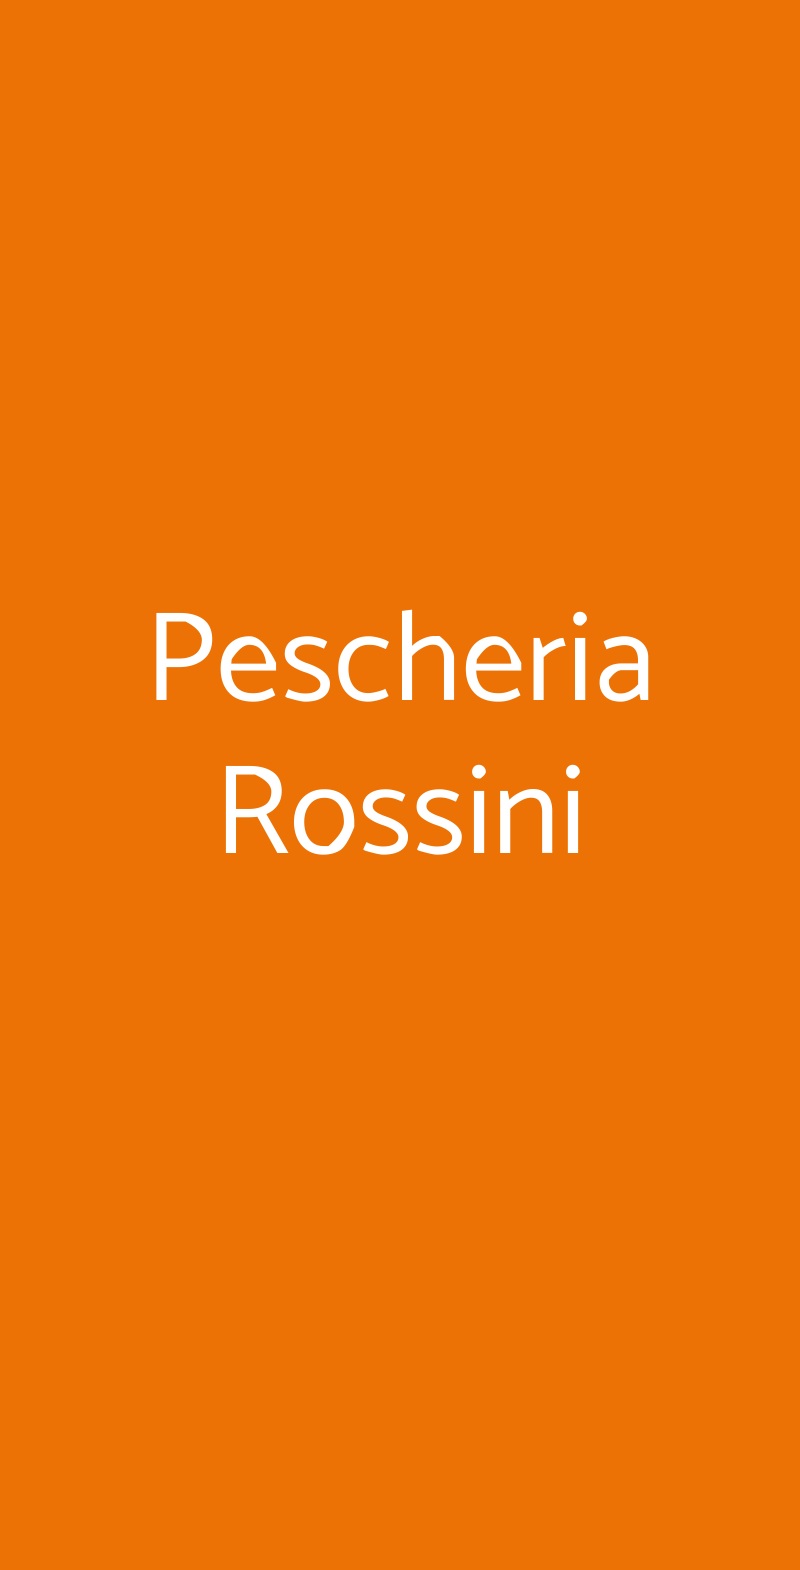 Pescheria Rossini Roma menù 1 pagina